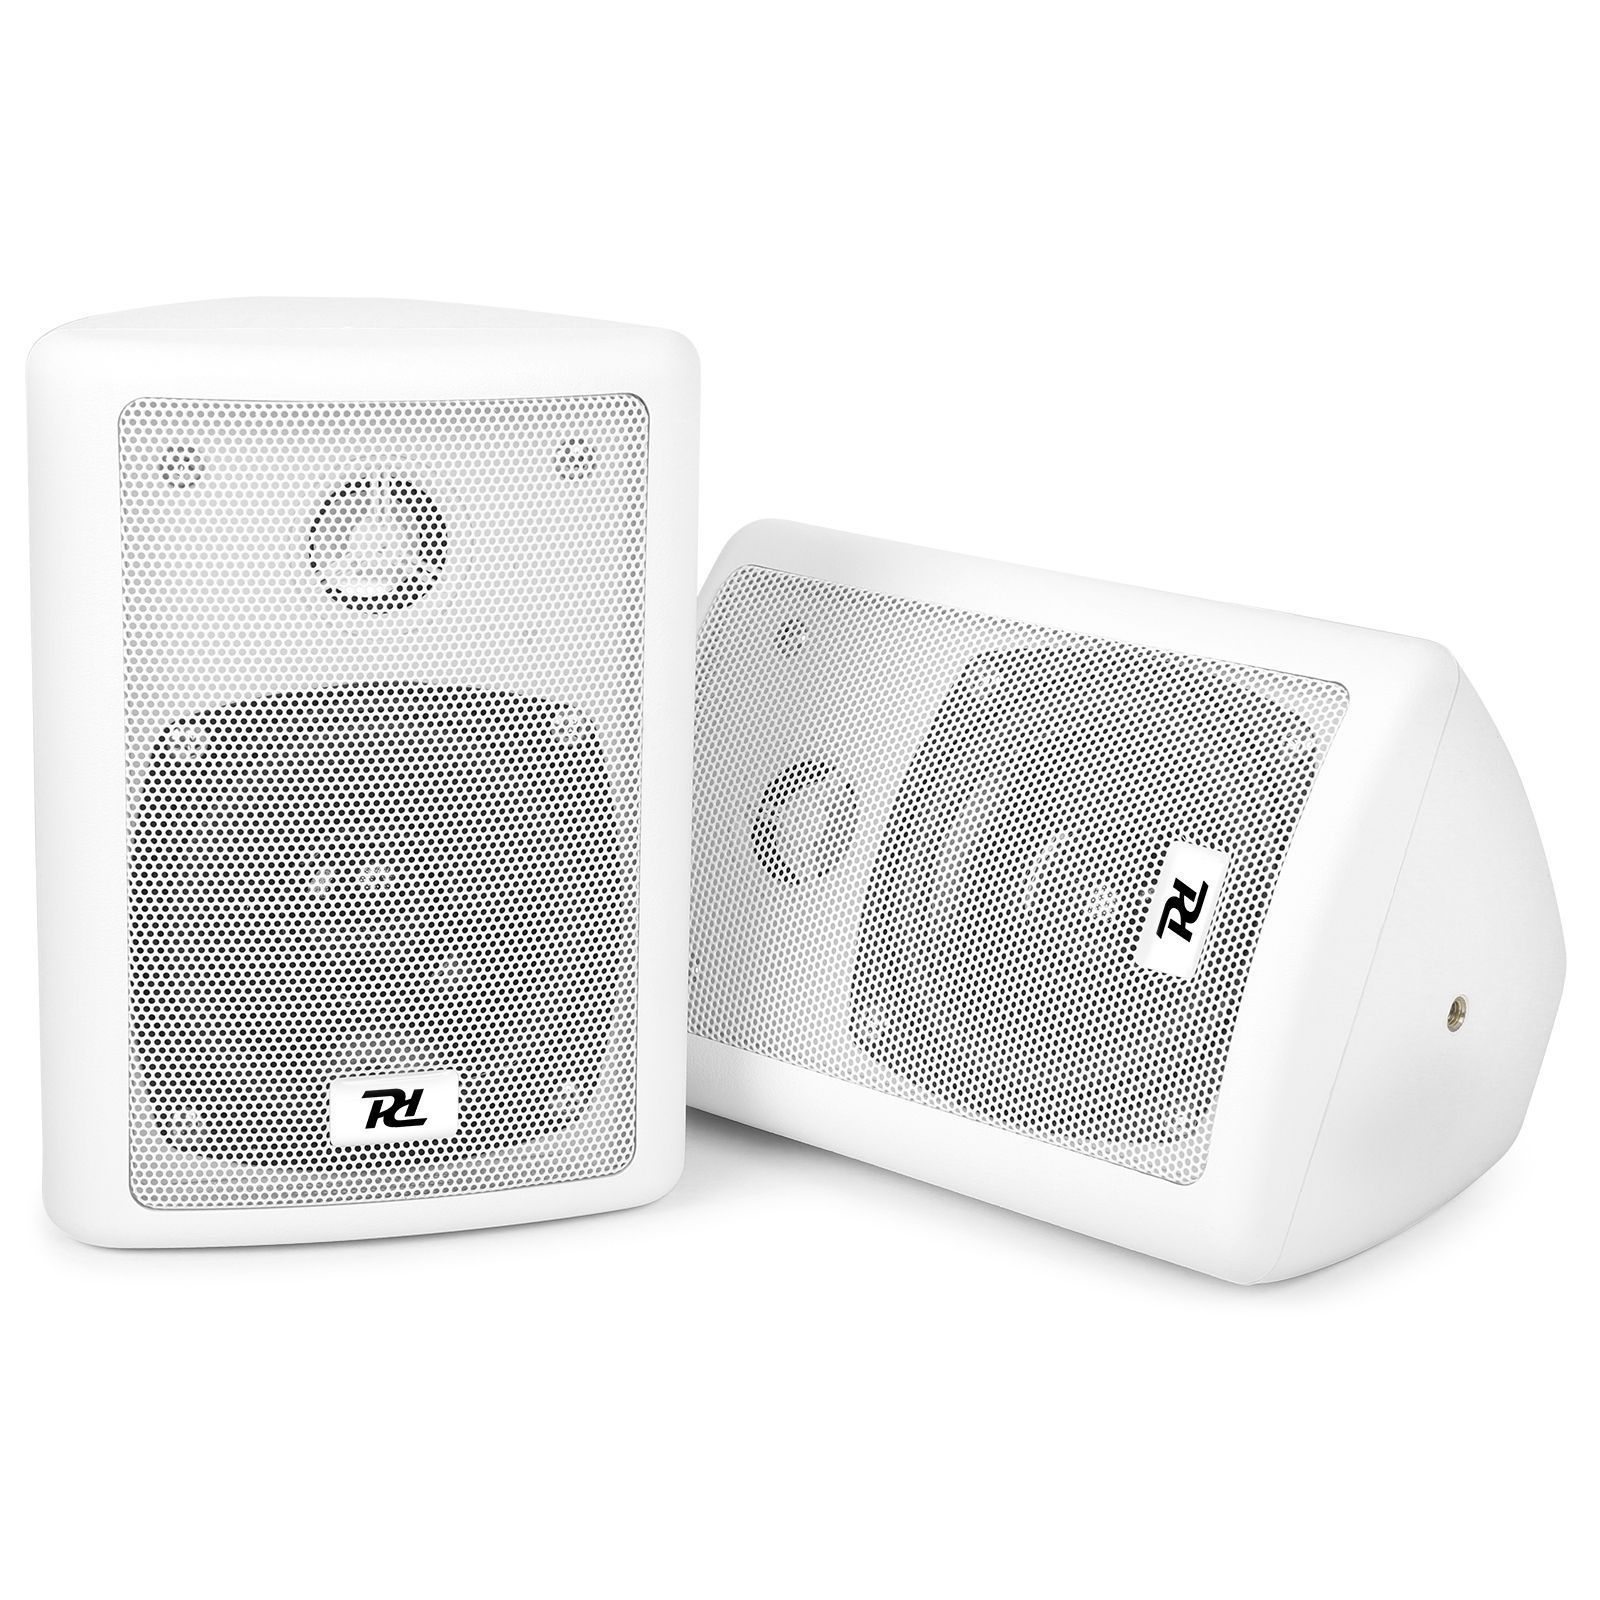 zijde Omgaan animatie SkyTec stereoset met witte speakers voor keuken, hobbykamer kopen?